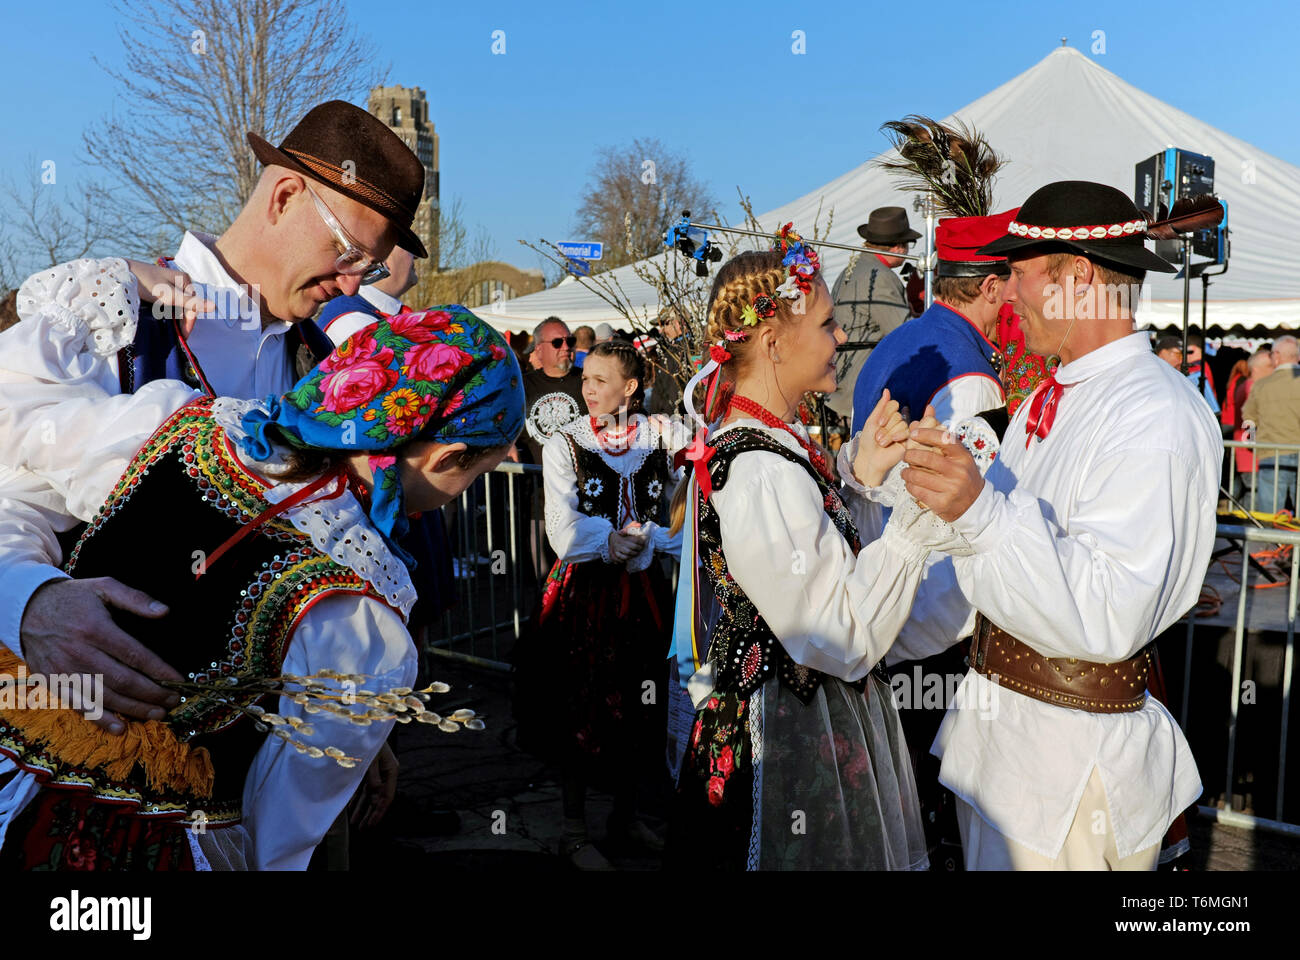 Parejas vestidas en trajes de baile tradicional polaca durante la celebración del Día Dyngus 2019 en Buffalo, Nueva York, Estados Unidos. Foto de stock